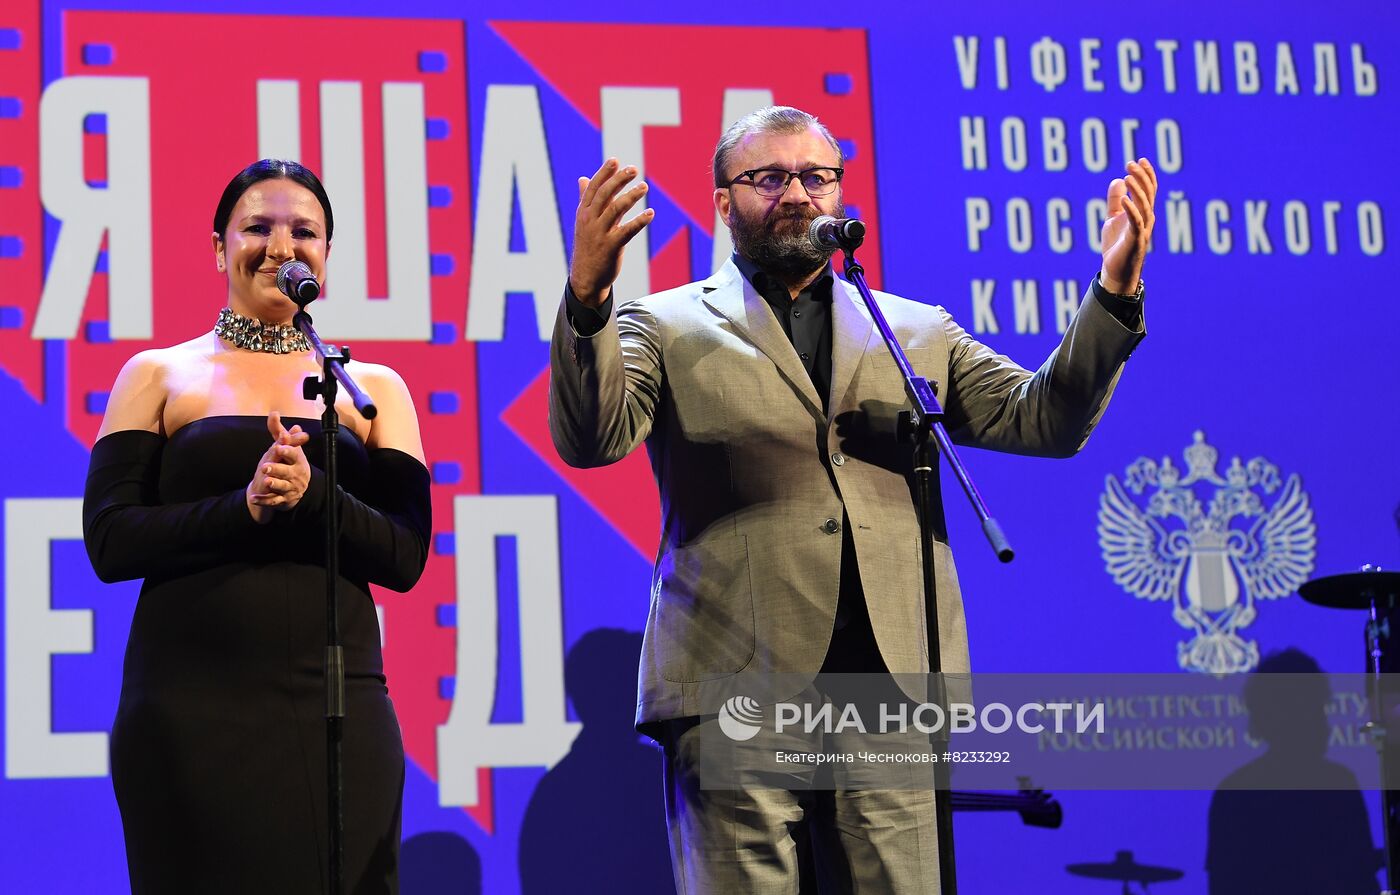 Открытие VI фестиваля нового российского кино "Горький fest"